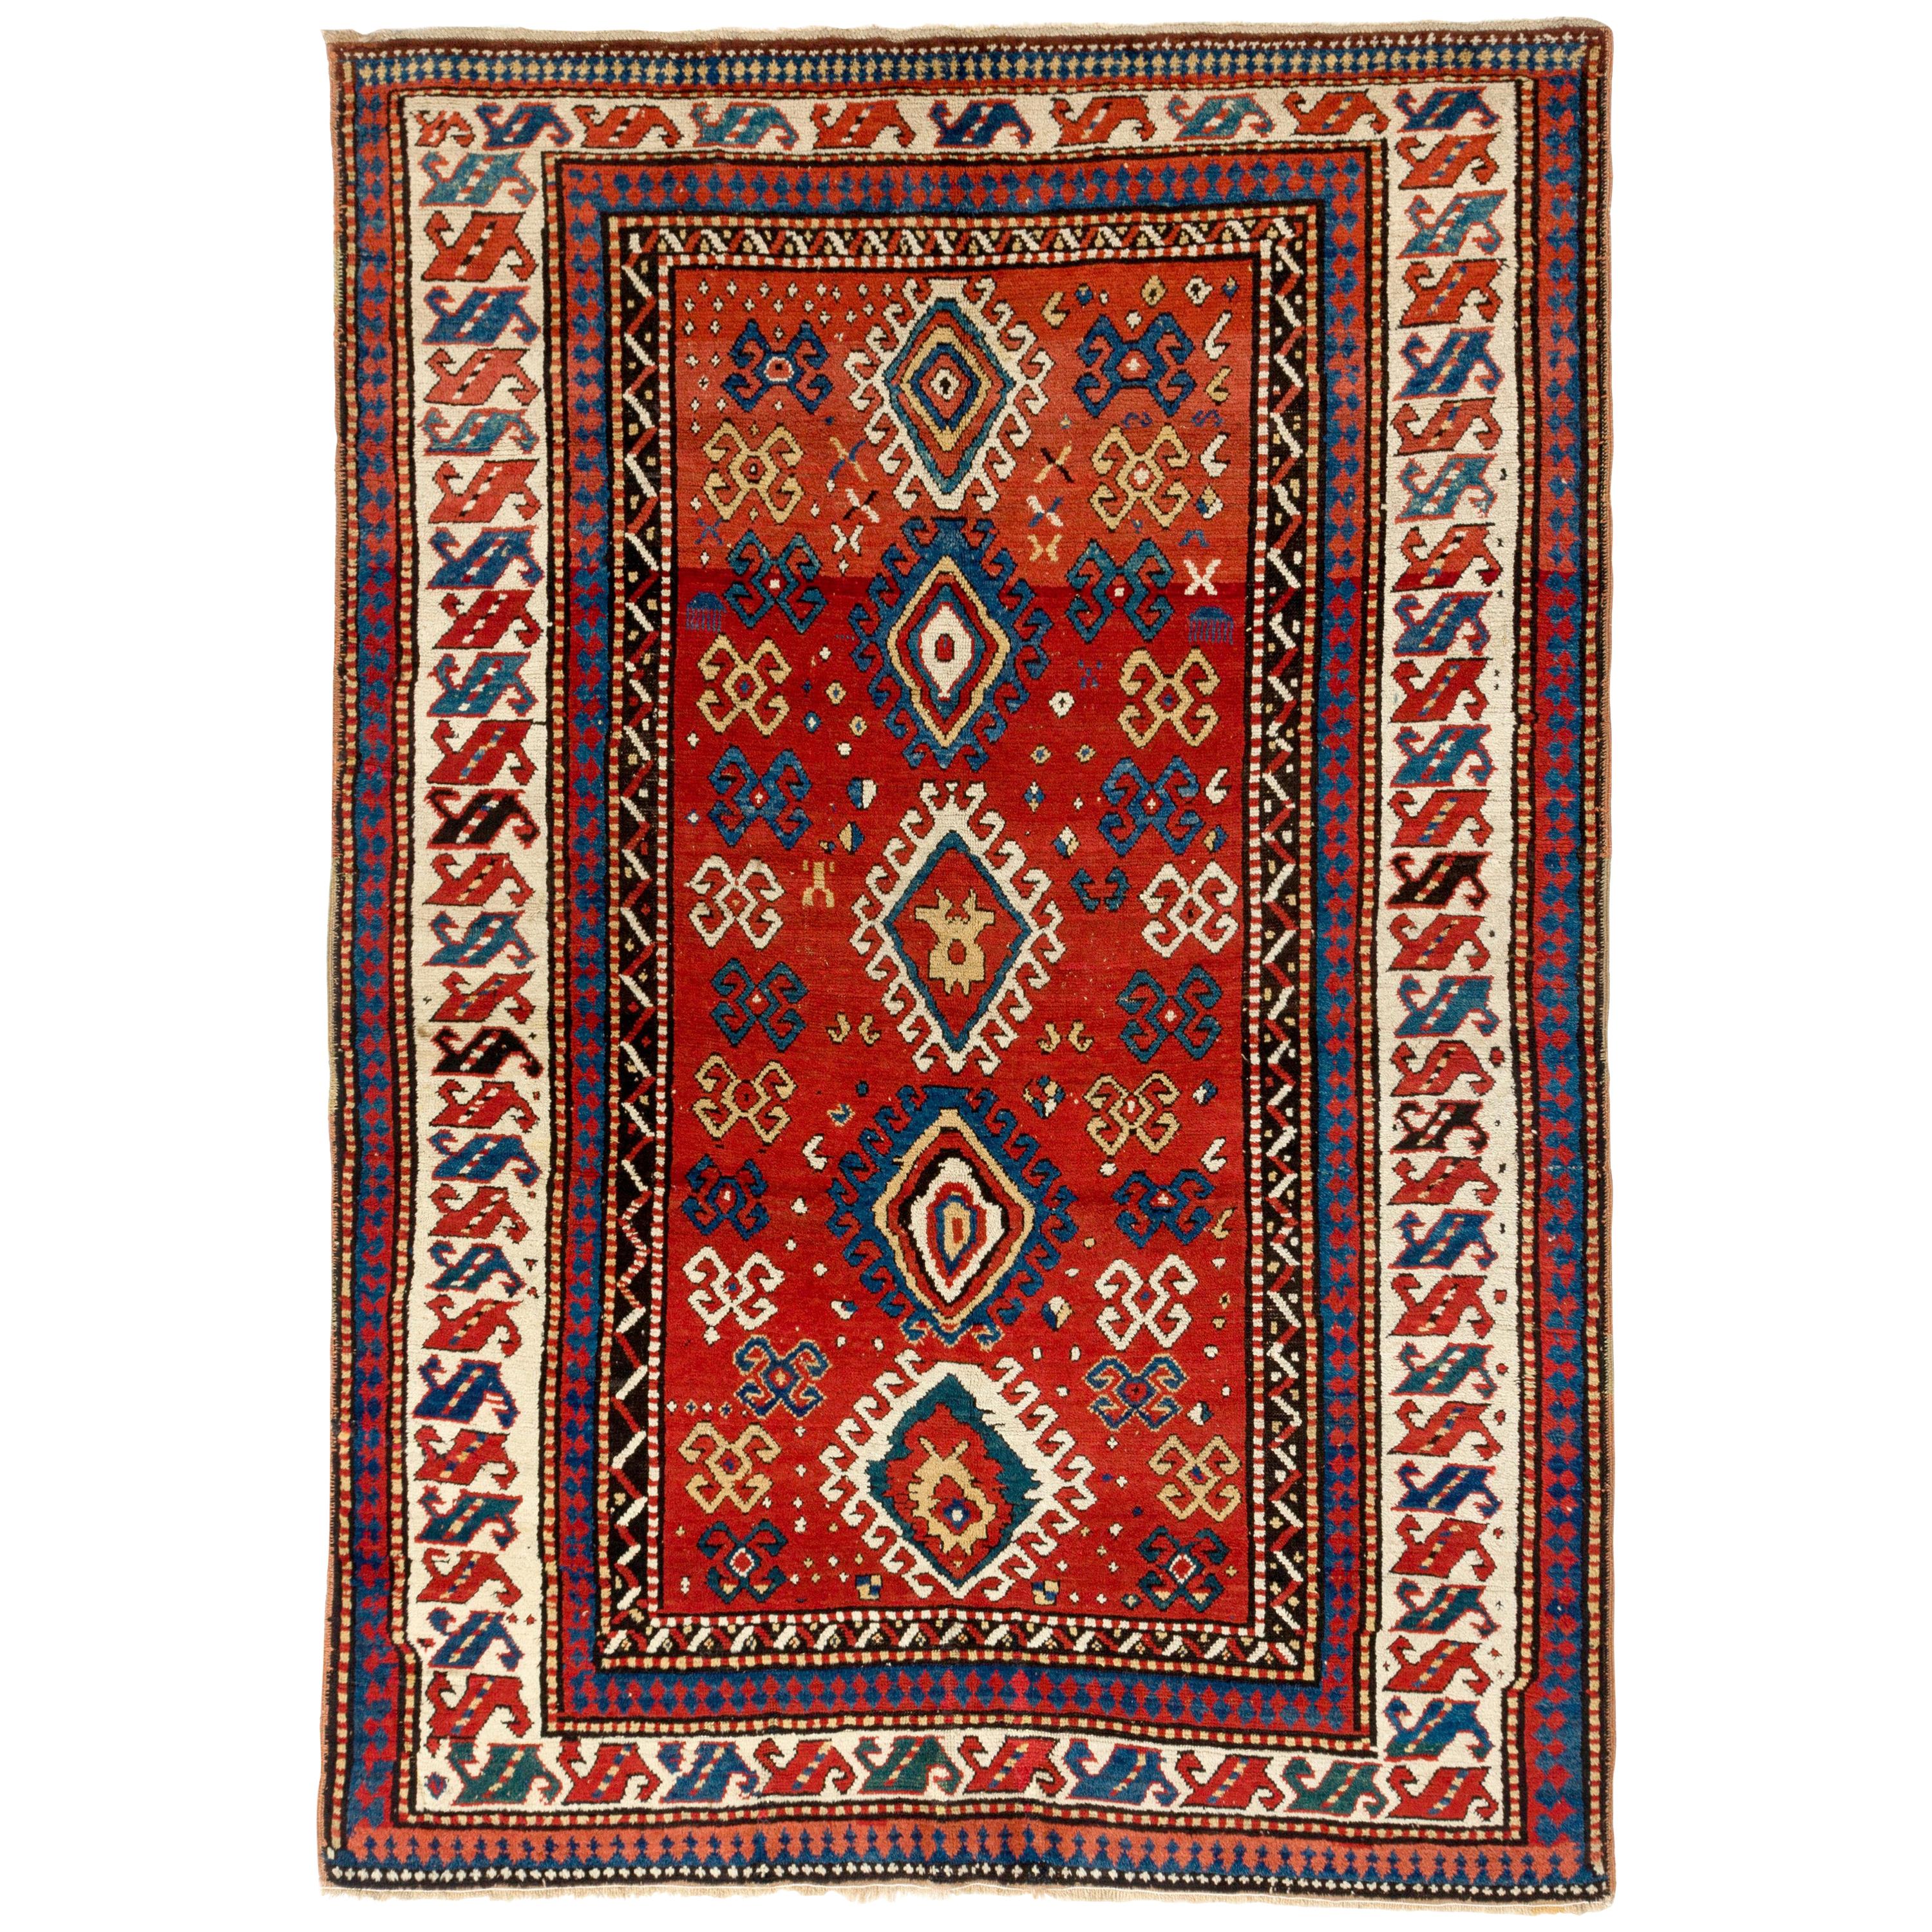 5.6x8 Ft Antique Caucasian Kazak Rug, Ca 1850. Natural Dyes. Excellent Condition